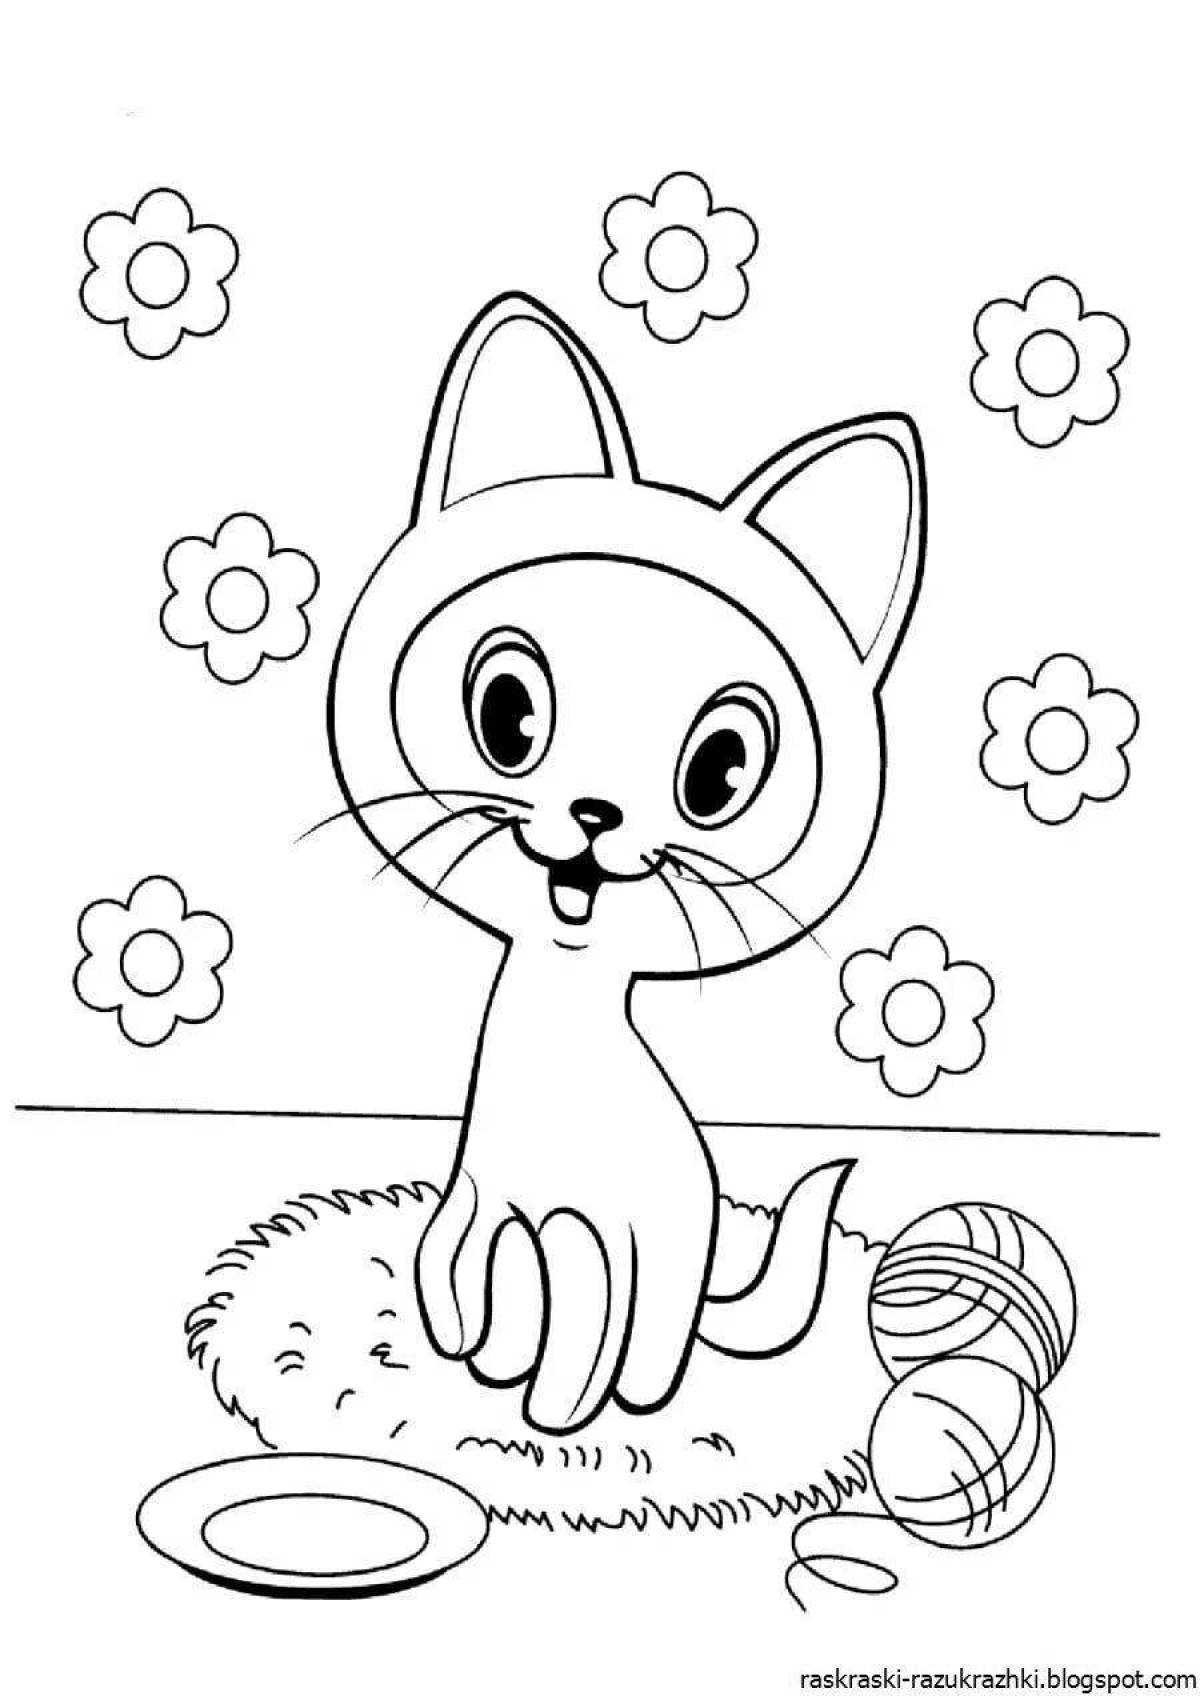 Fun coloring cat for kids